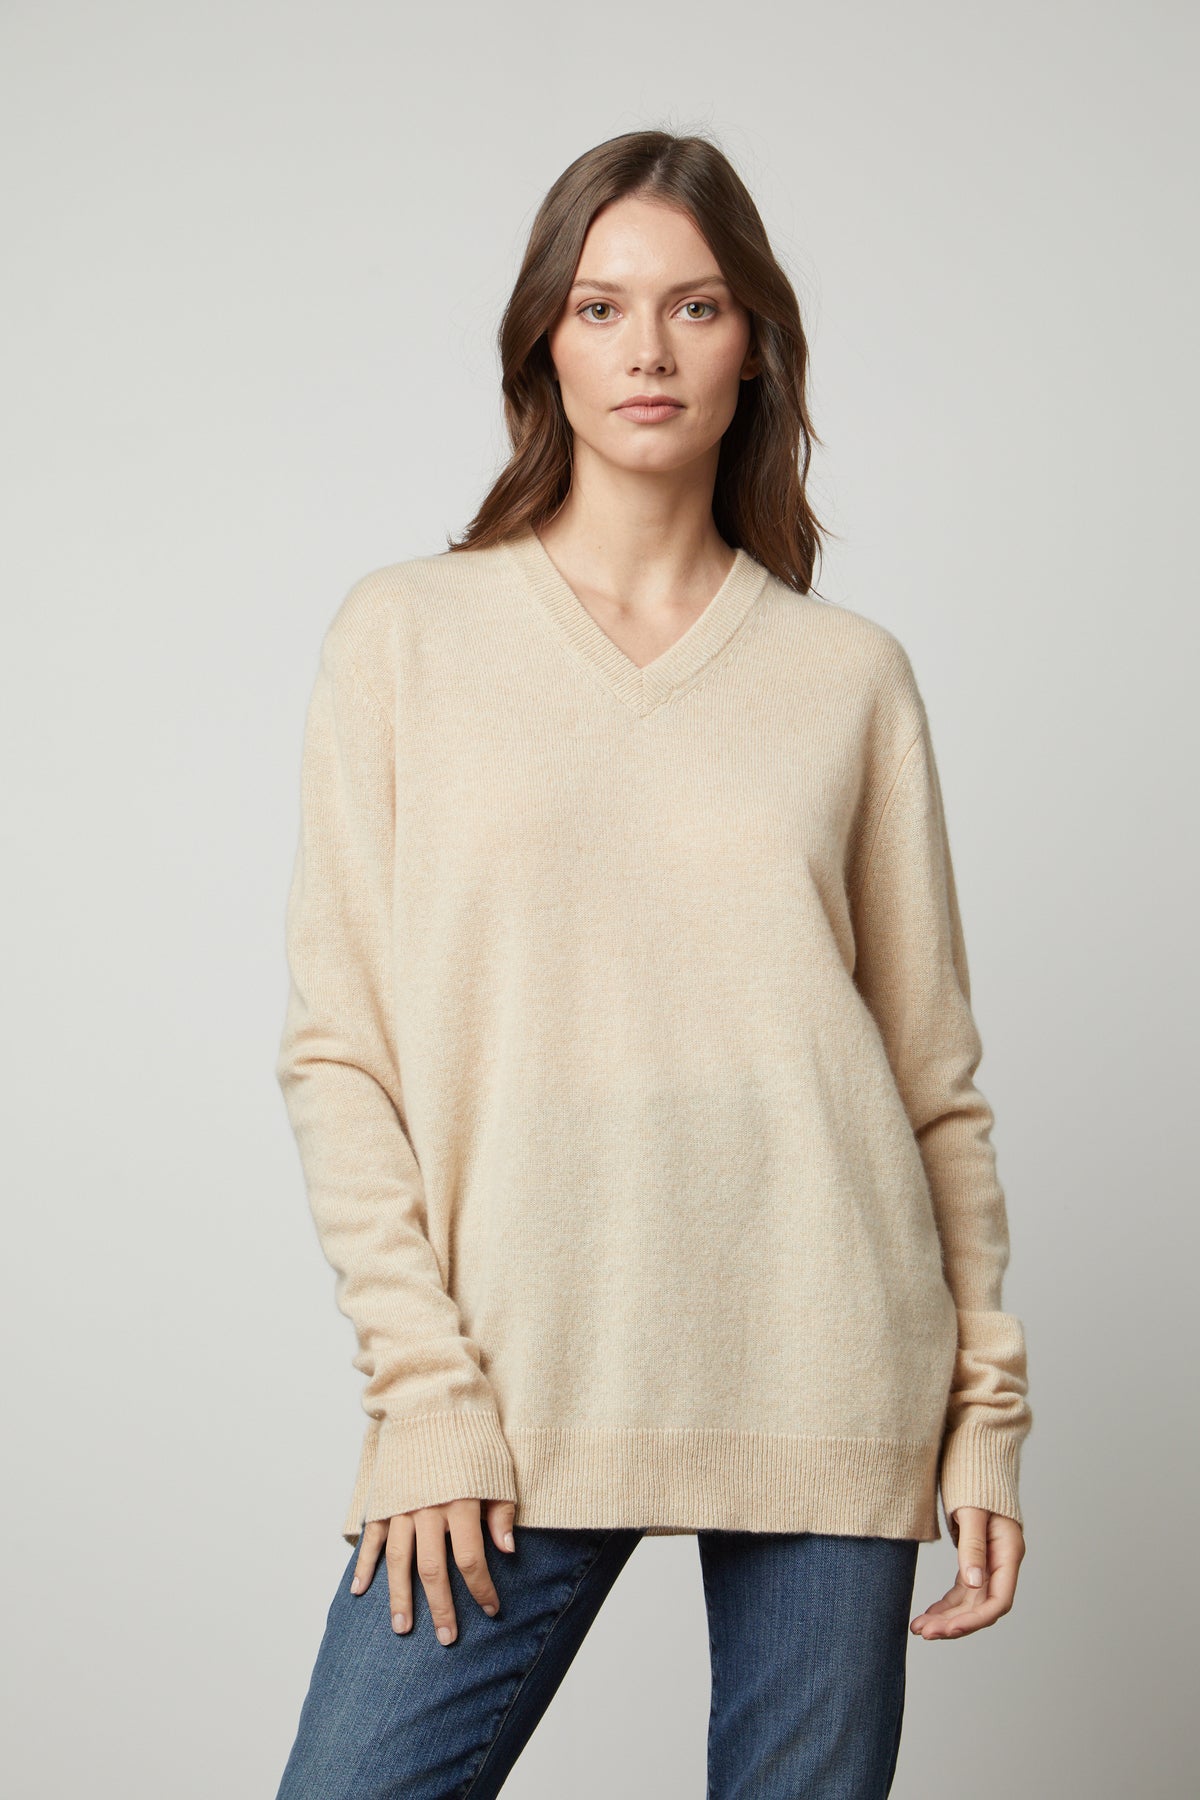 The Velvet by Graham & Spencer oversized cashmere v-neck sweater in beige.-35655722729665